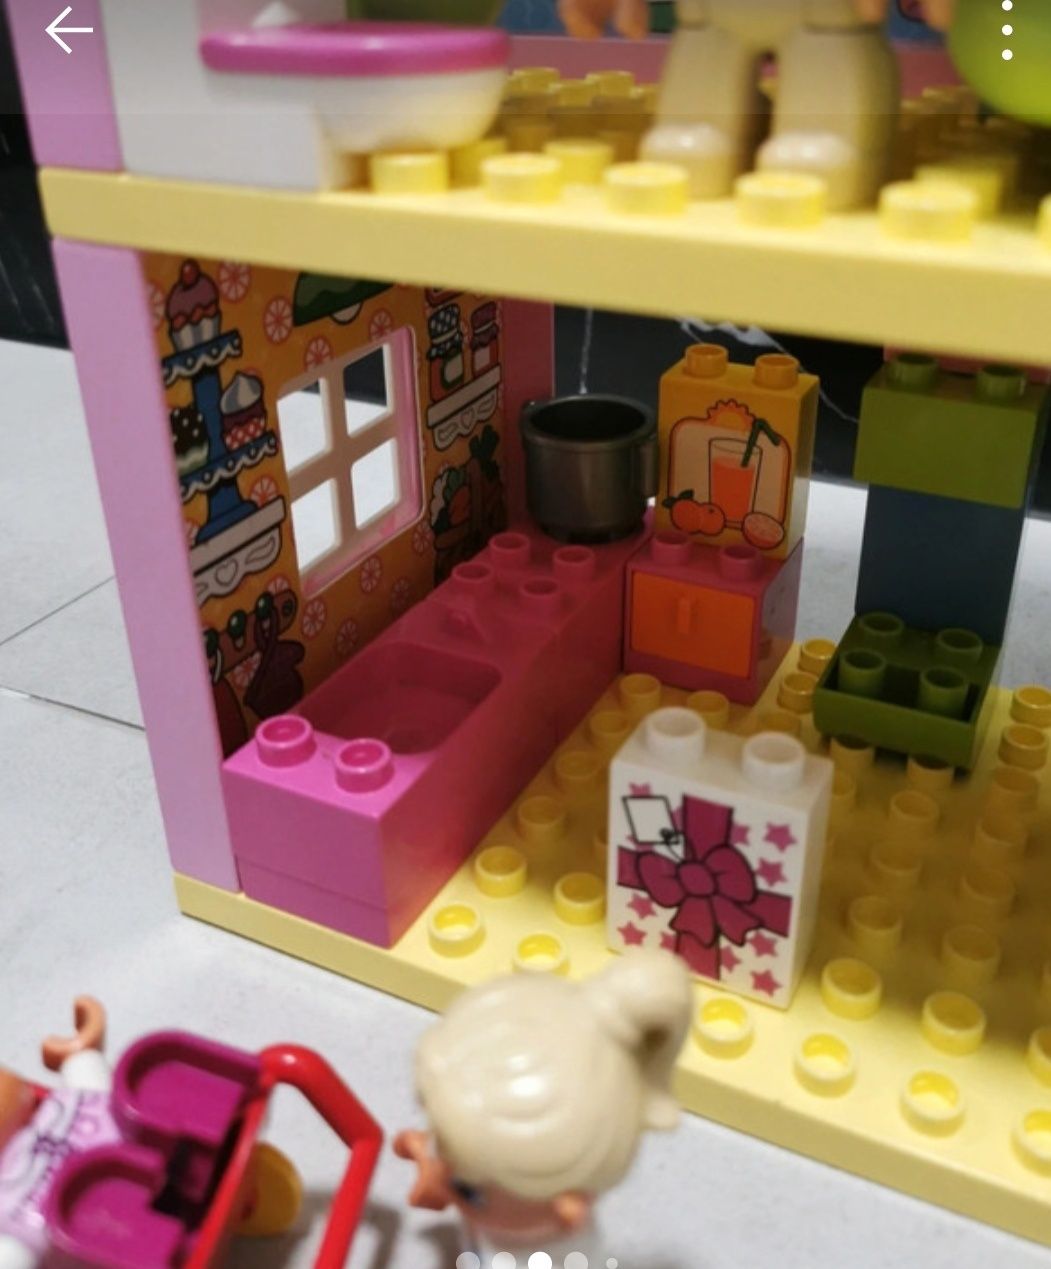 Unikat Domek 10505 Lego duplo plus gratisy odgrywanie ról Rodzina kot